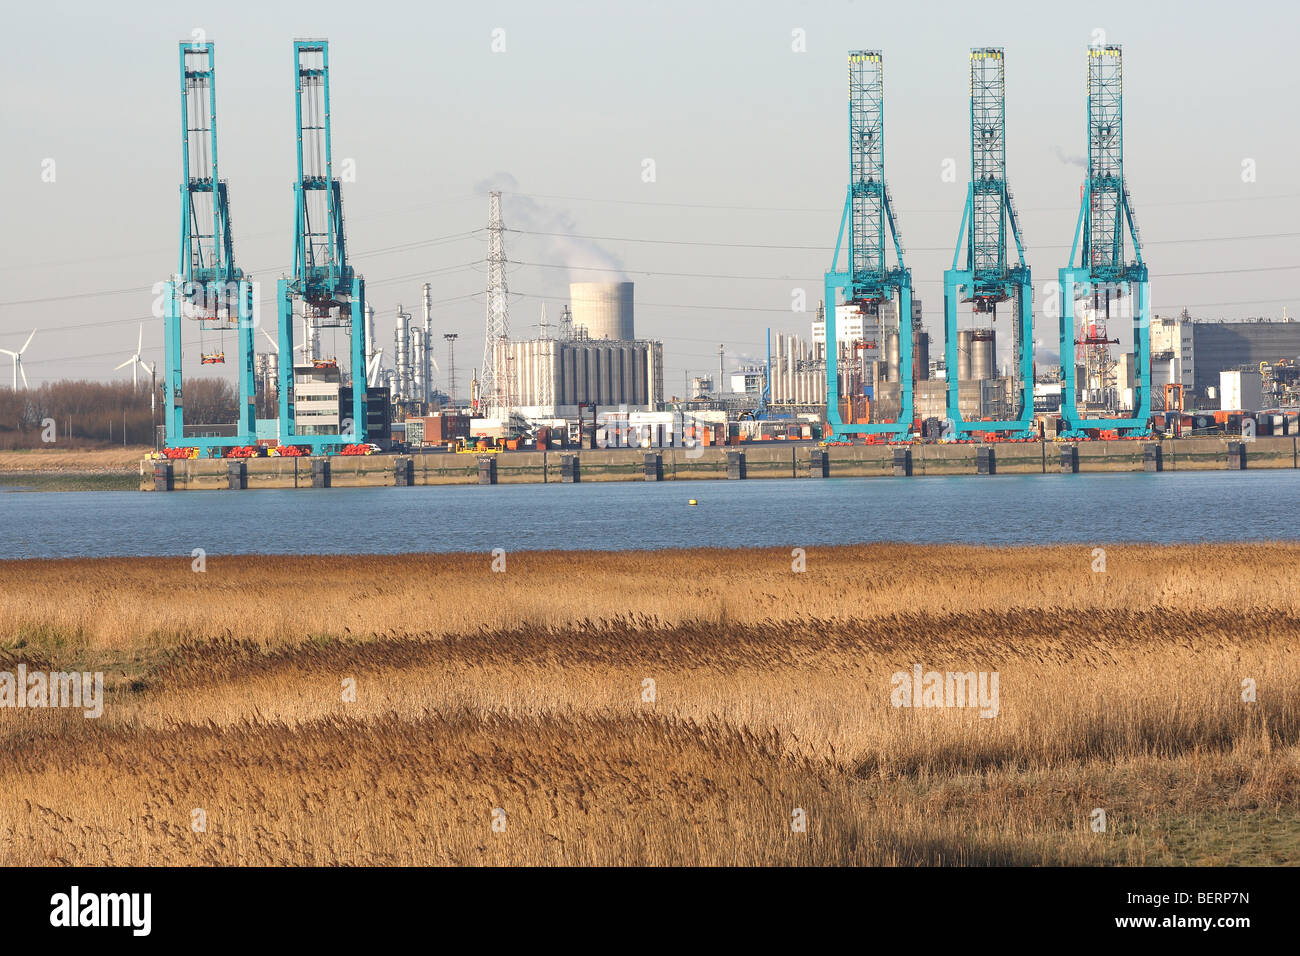 PaArdenneschor and cranes in industrial estate, harbour of Antwerp, Belgium Stock Photo